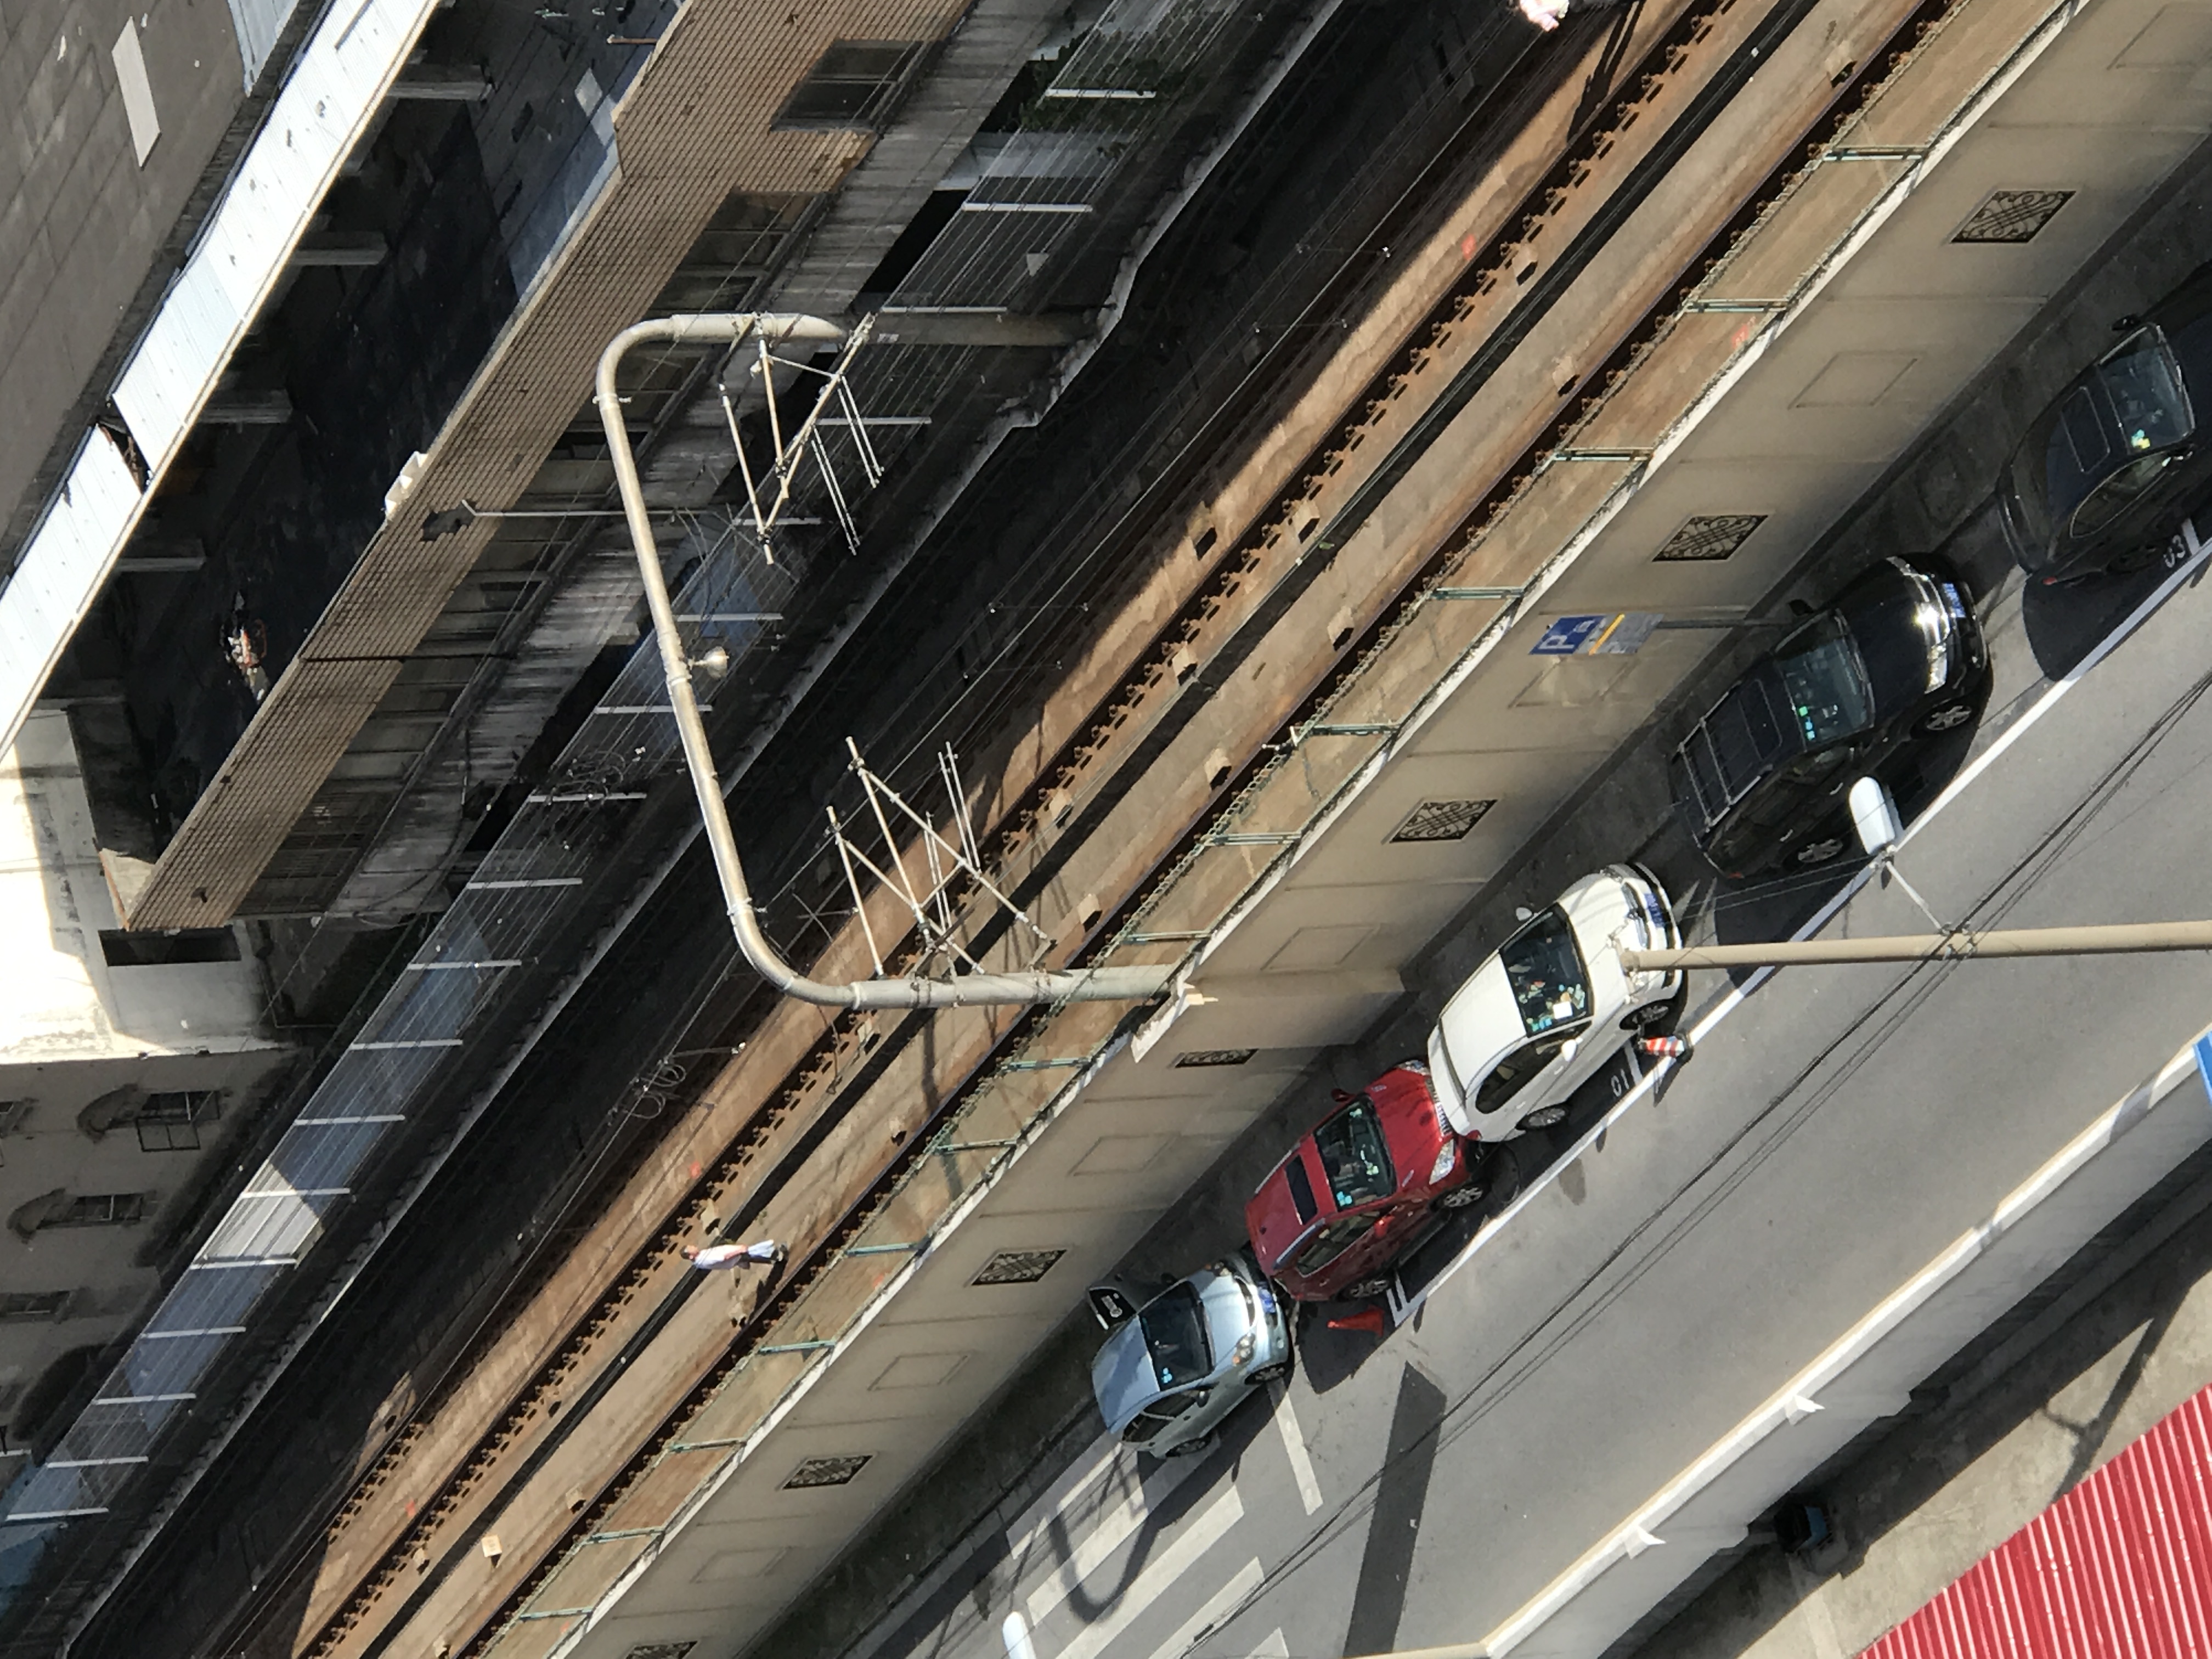 上海轨交13号线二期完成重要节点 预计2018年通车